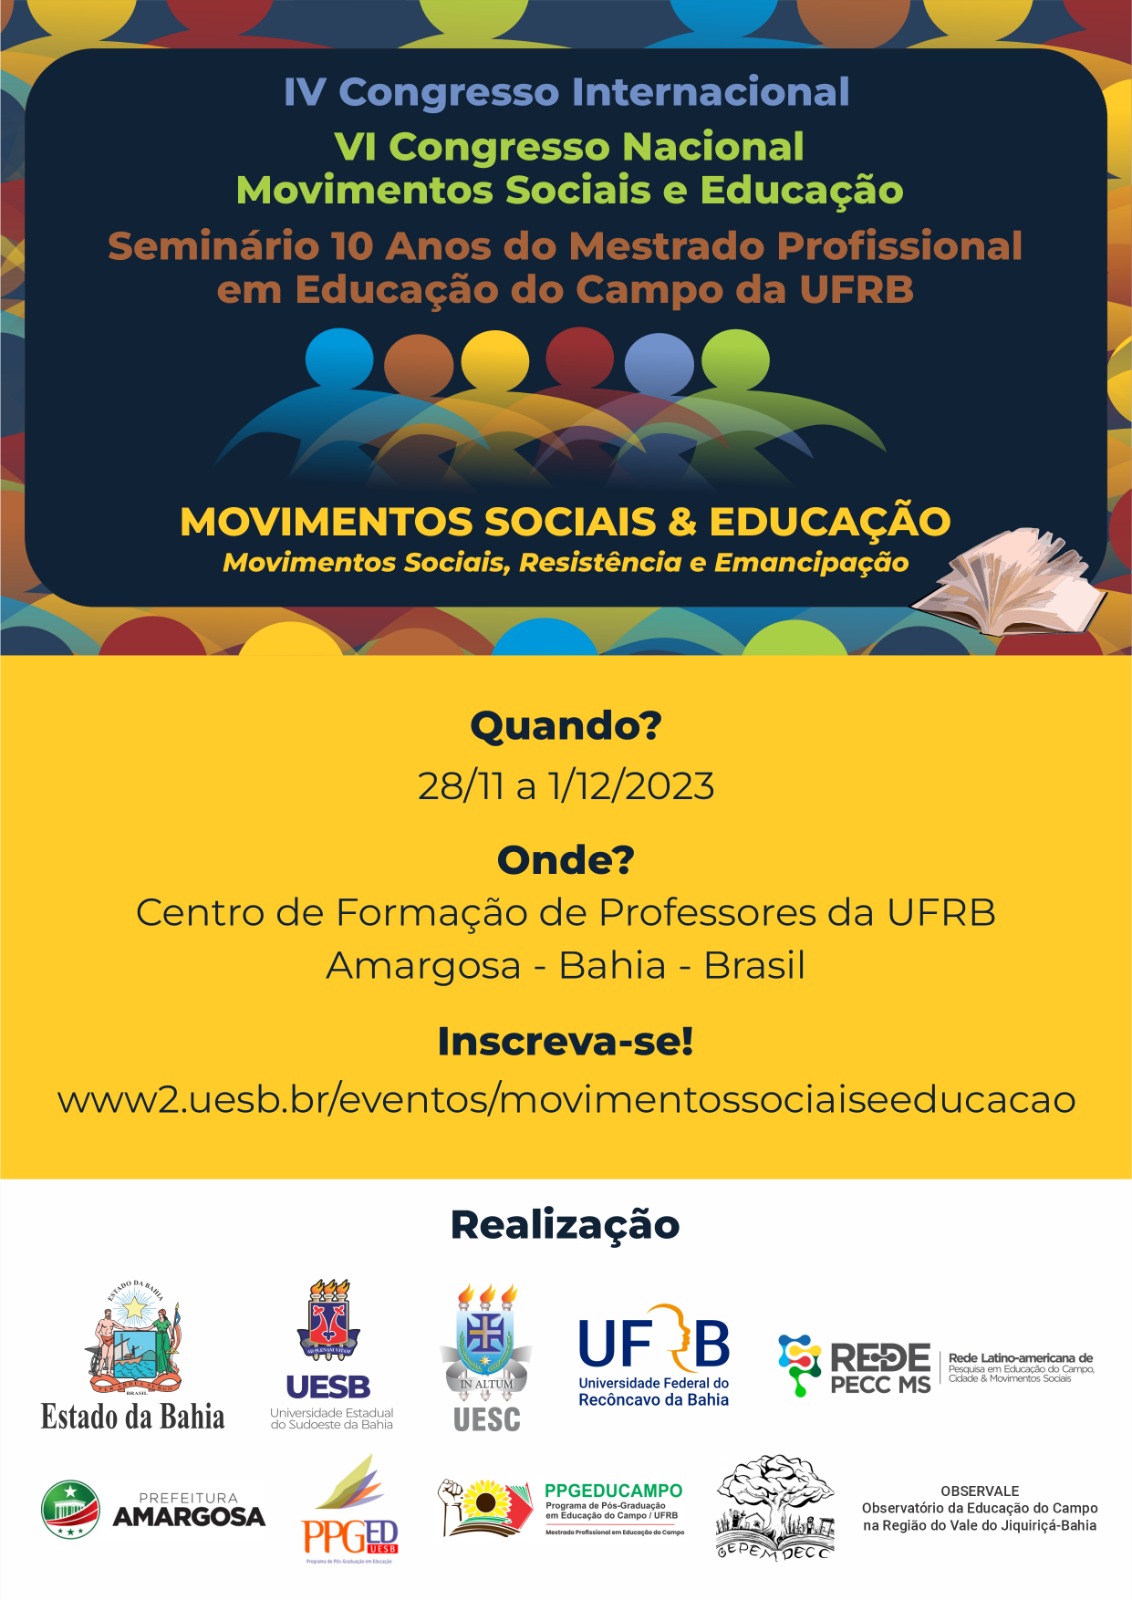 IV Congresso Internacional / VI Congresso Nacional Movimentos Sociais e Educação / Seminário 10 Anos do Mestrado Profissional em Educação do Campo da UFRB